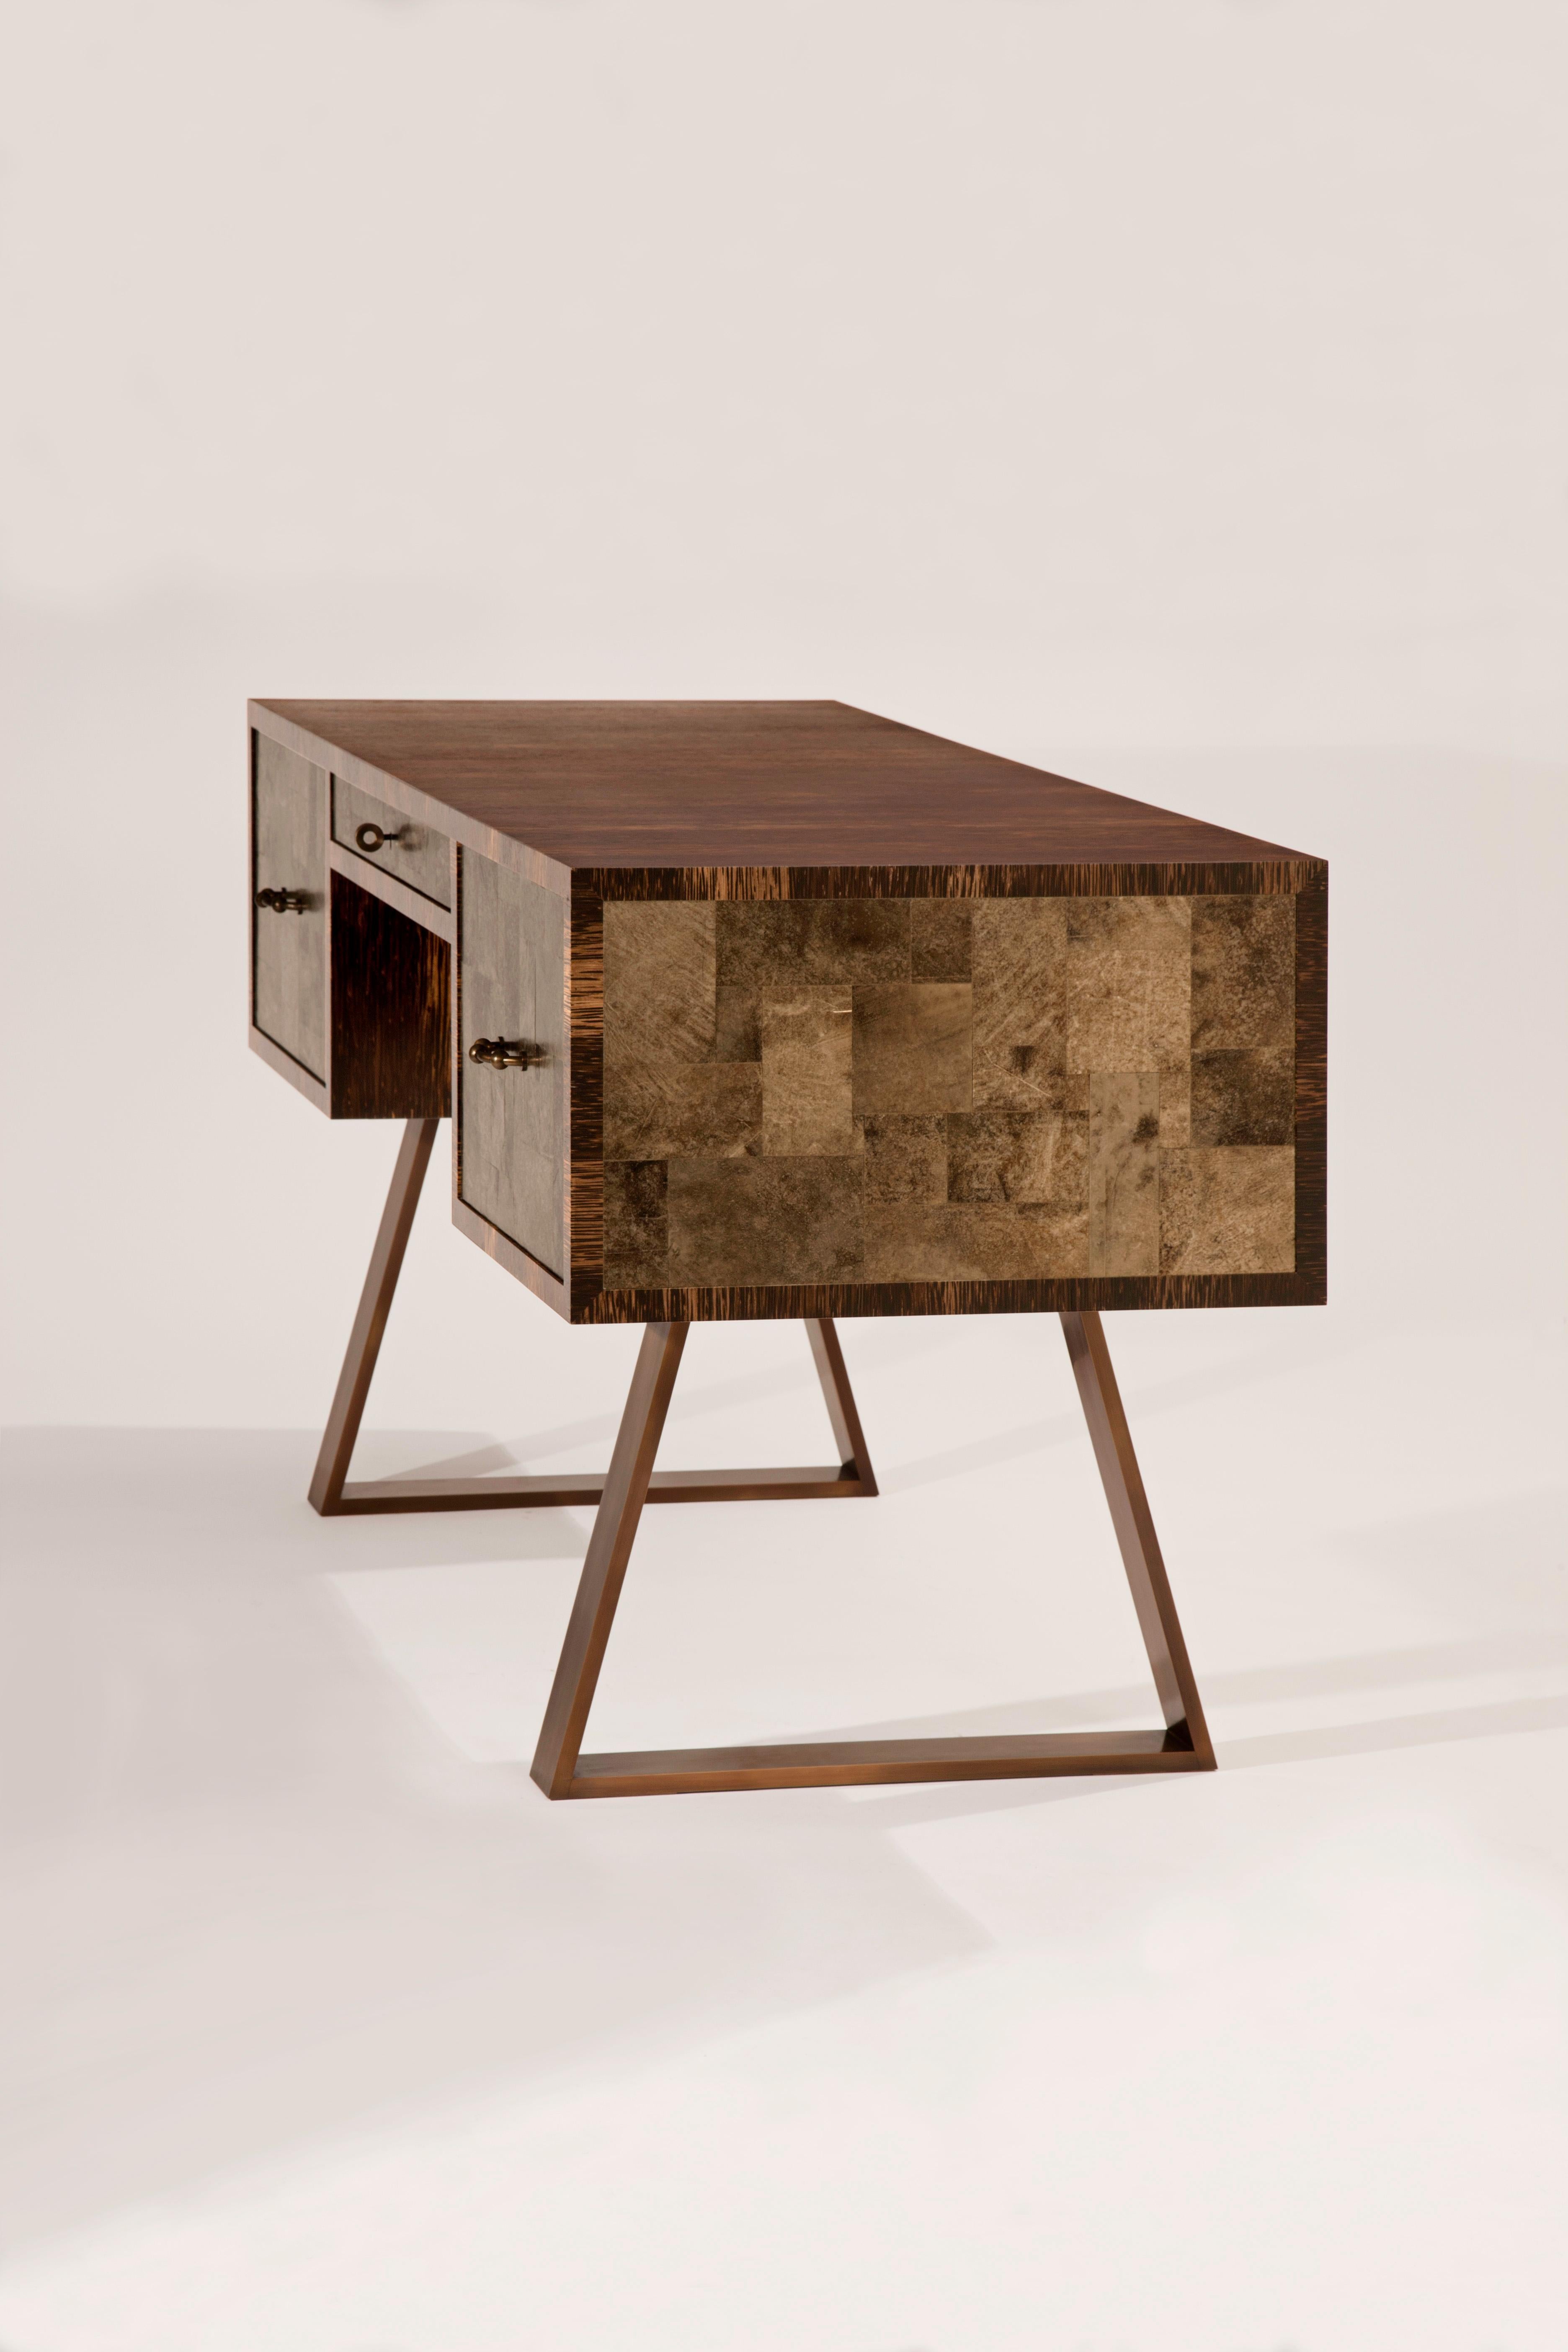 Entworfen von Jean-Paul Viollet.
Schreibtisch aus Glimmer, Palmenholz und patinierter Bronze.